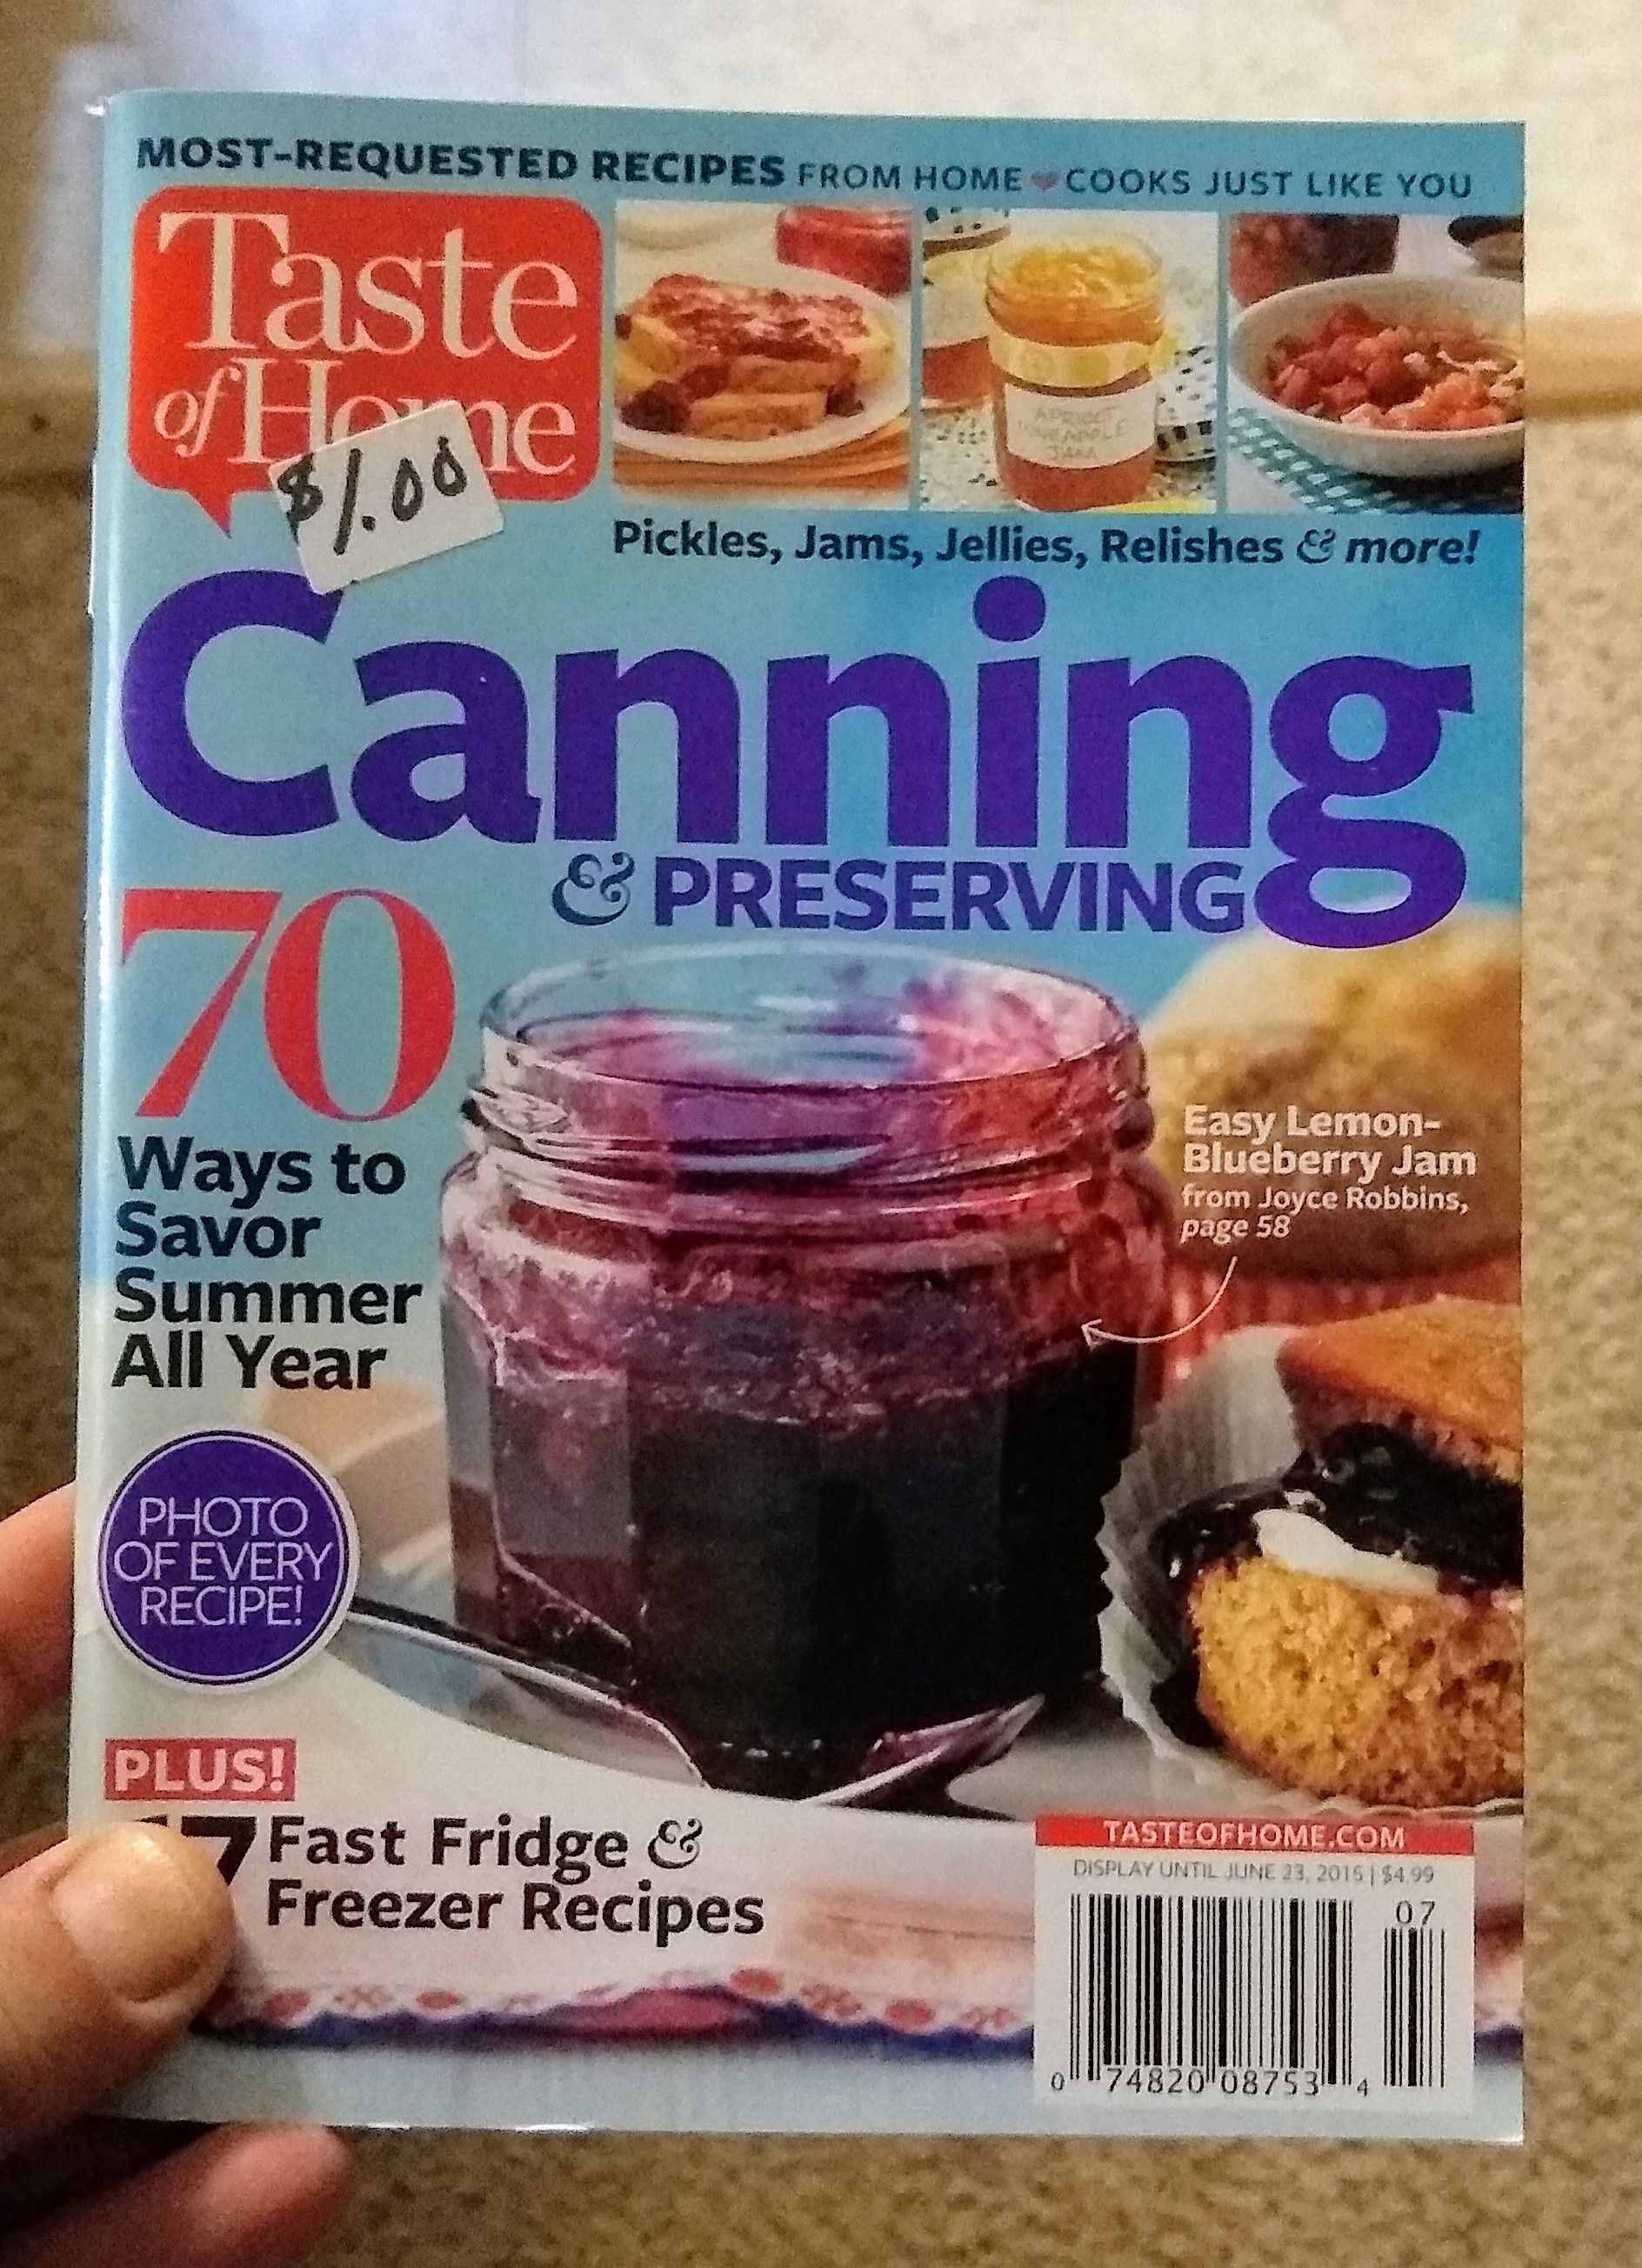 Canning magazines